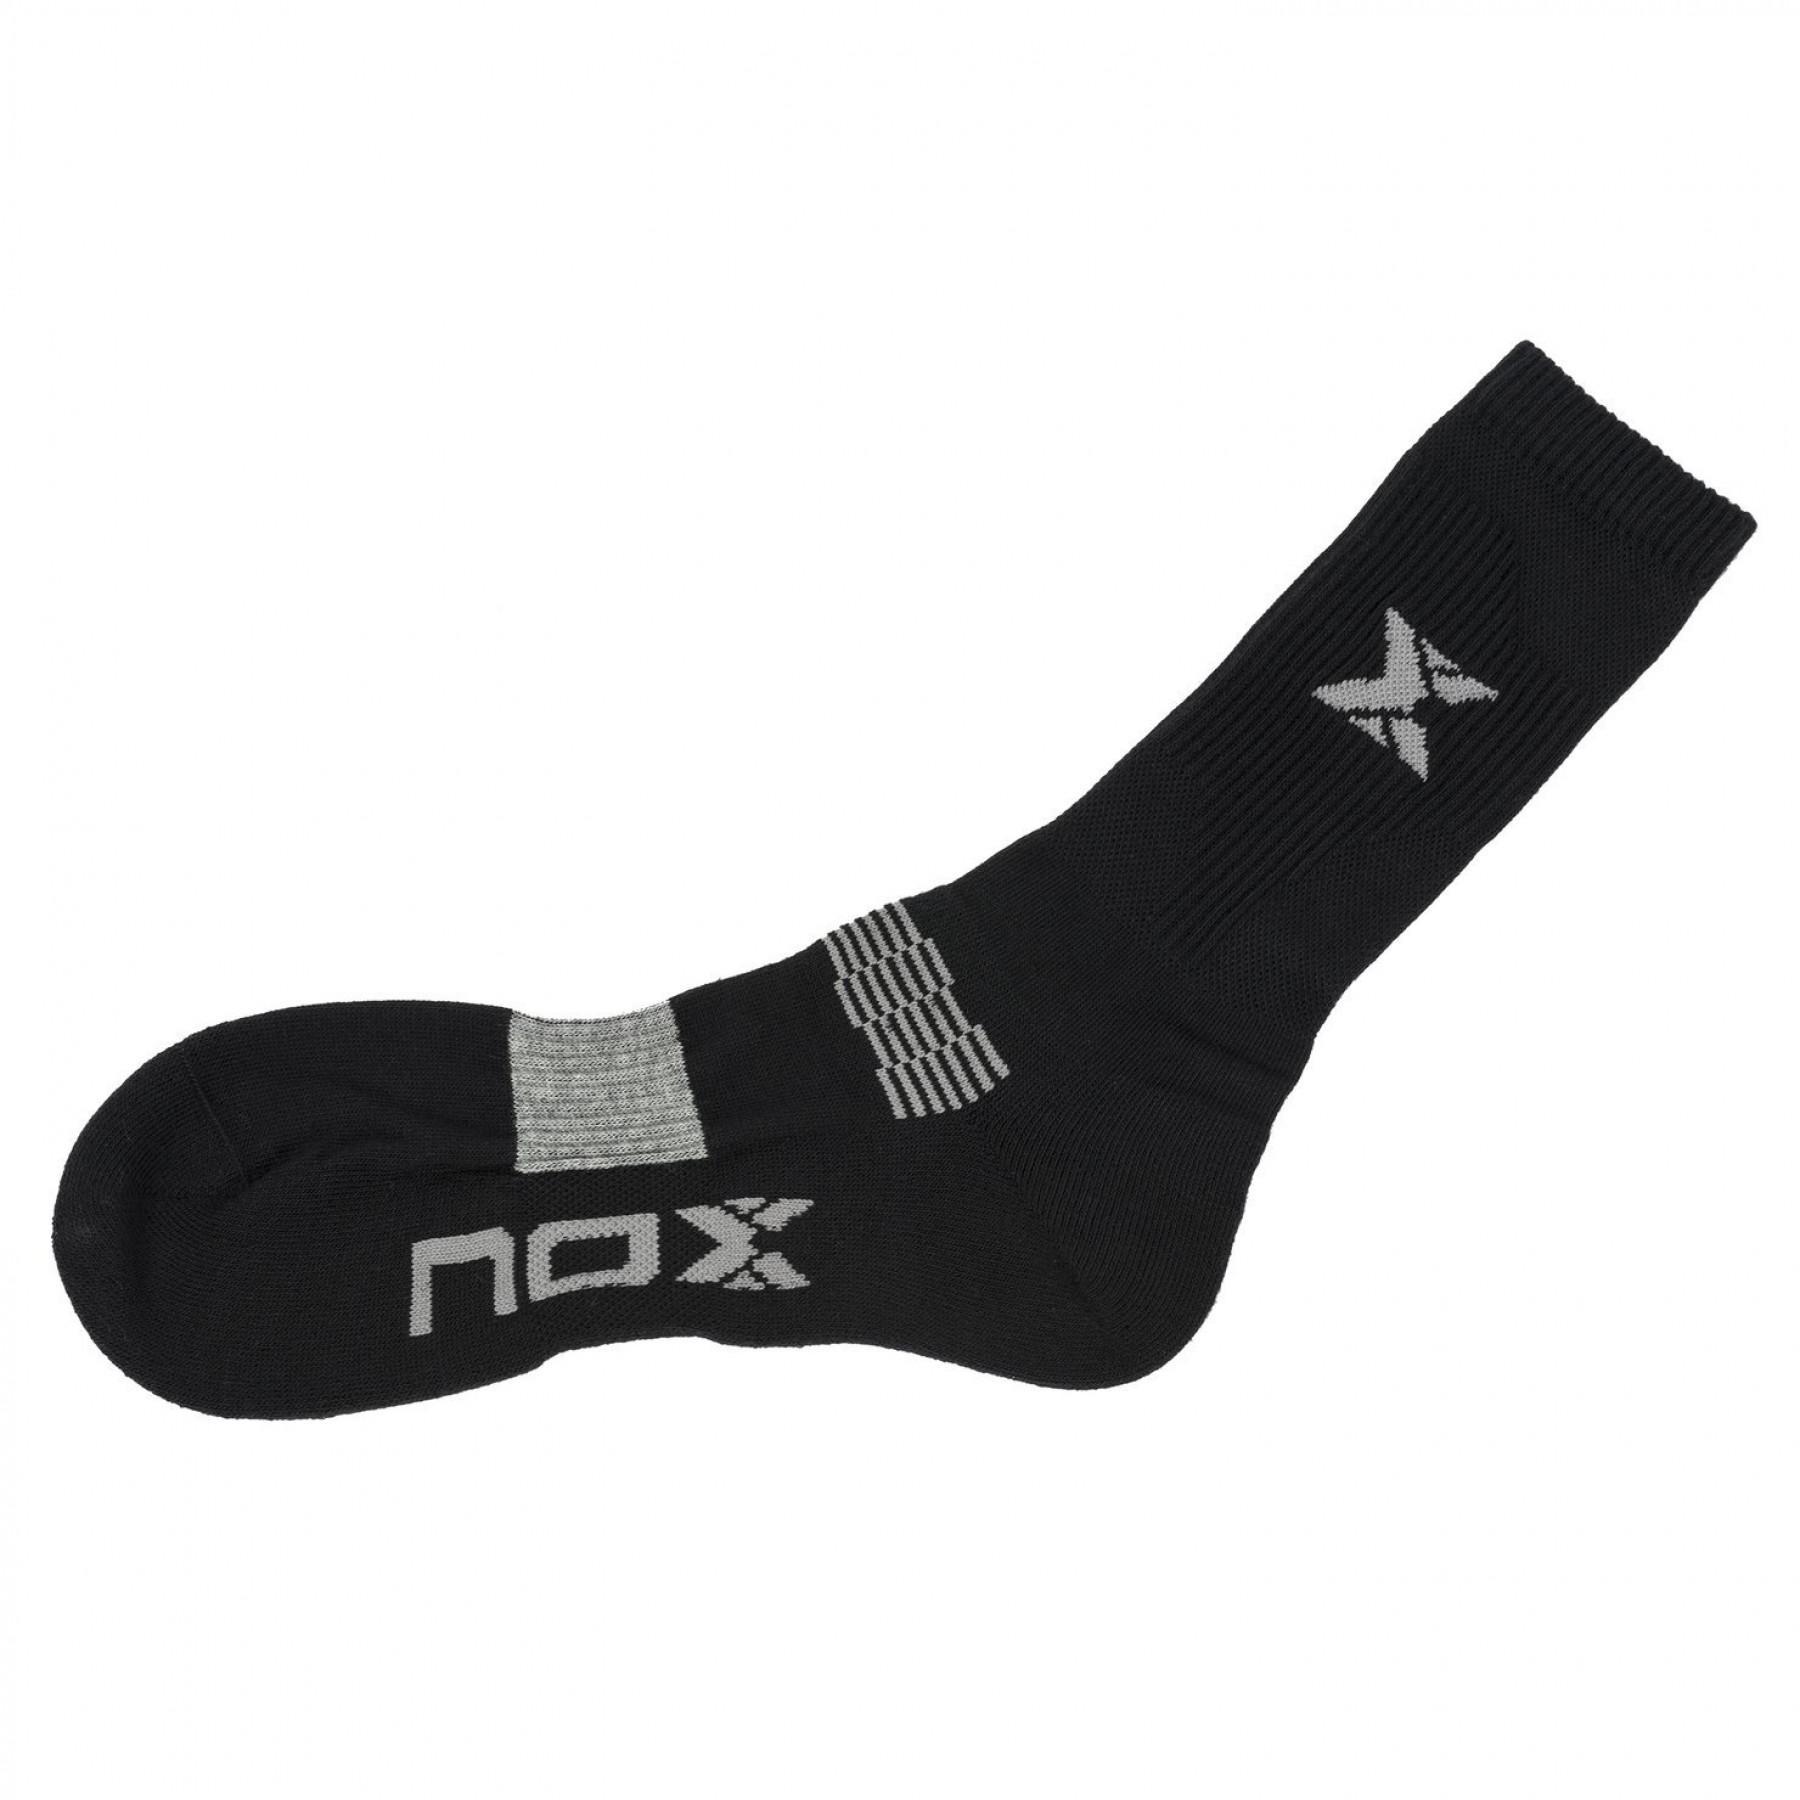 Pair of socks Nox